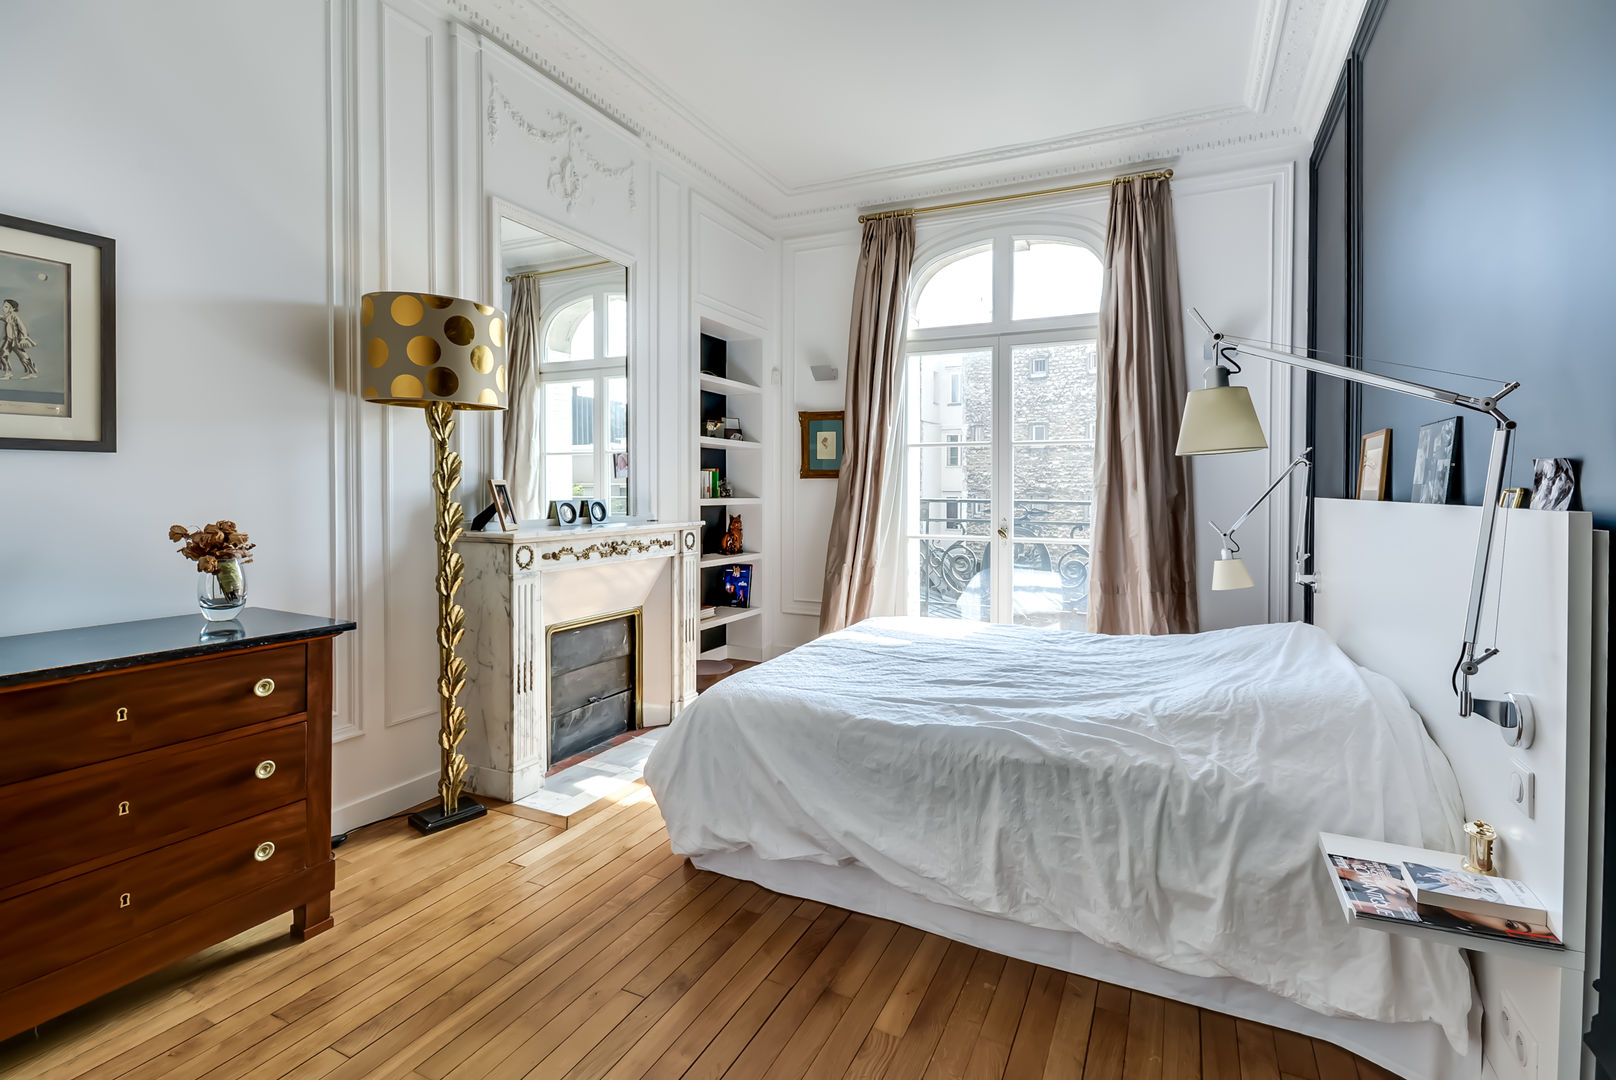 Un appartement haussmanien revisité - Paris 16e, ATELIER FB ATELIER FB Habitaciones modernas